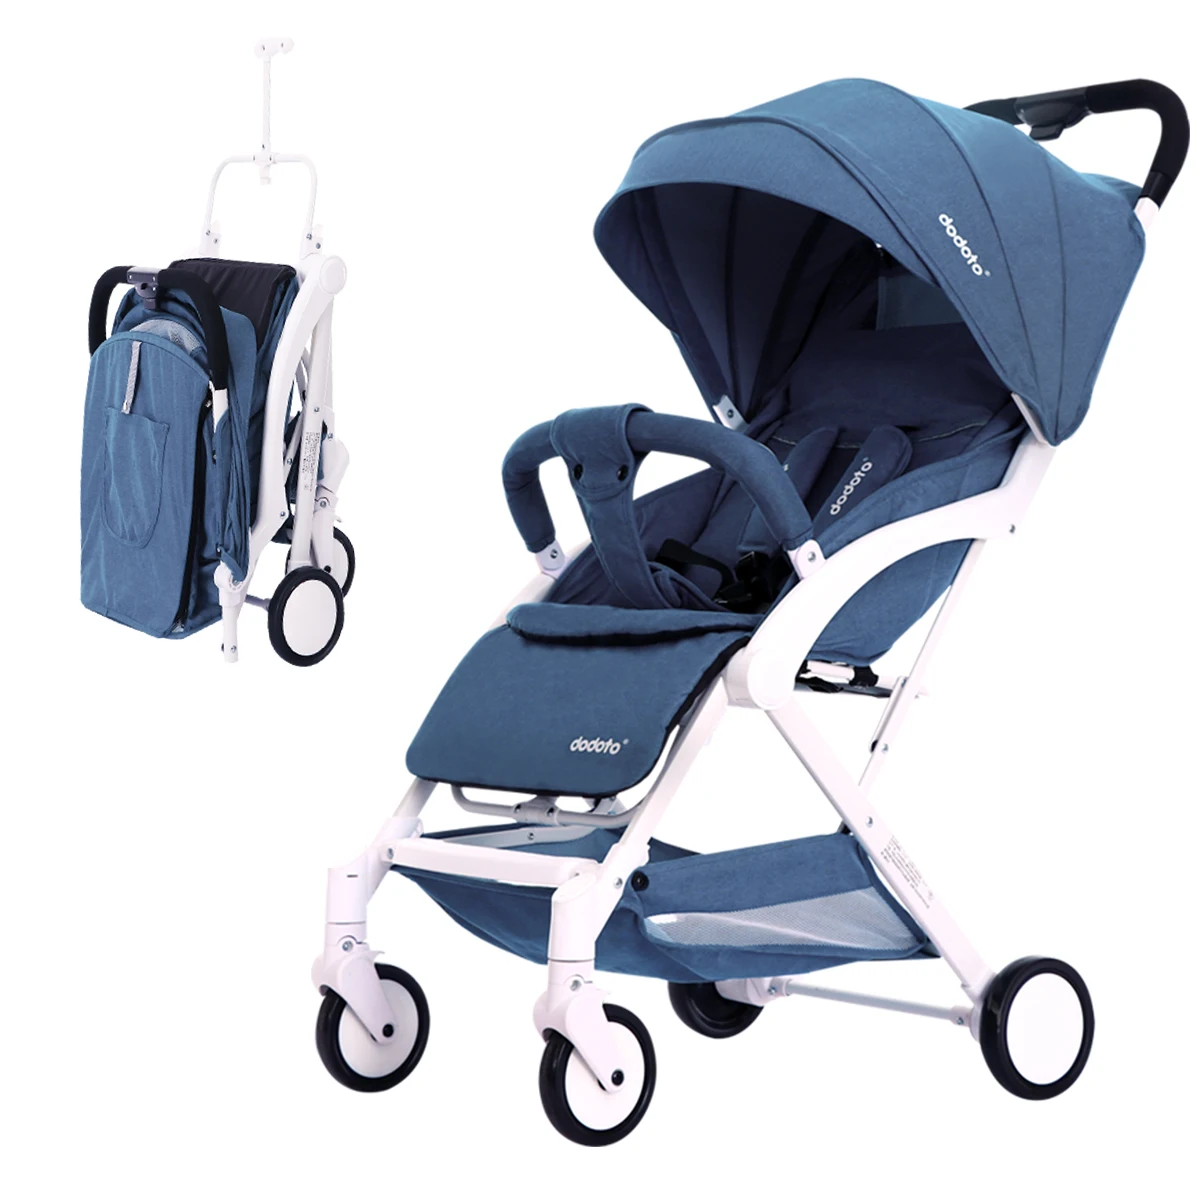 Регулируемая Роскошная детская коляска 3 в 1 портативная Высокая Ландшафтная Роскошная коляска Горячая мама розовая коляска дорожная коляска - Цвет: Dark blue